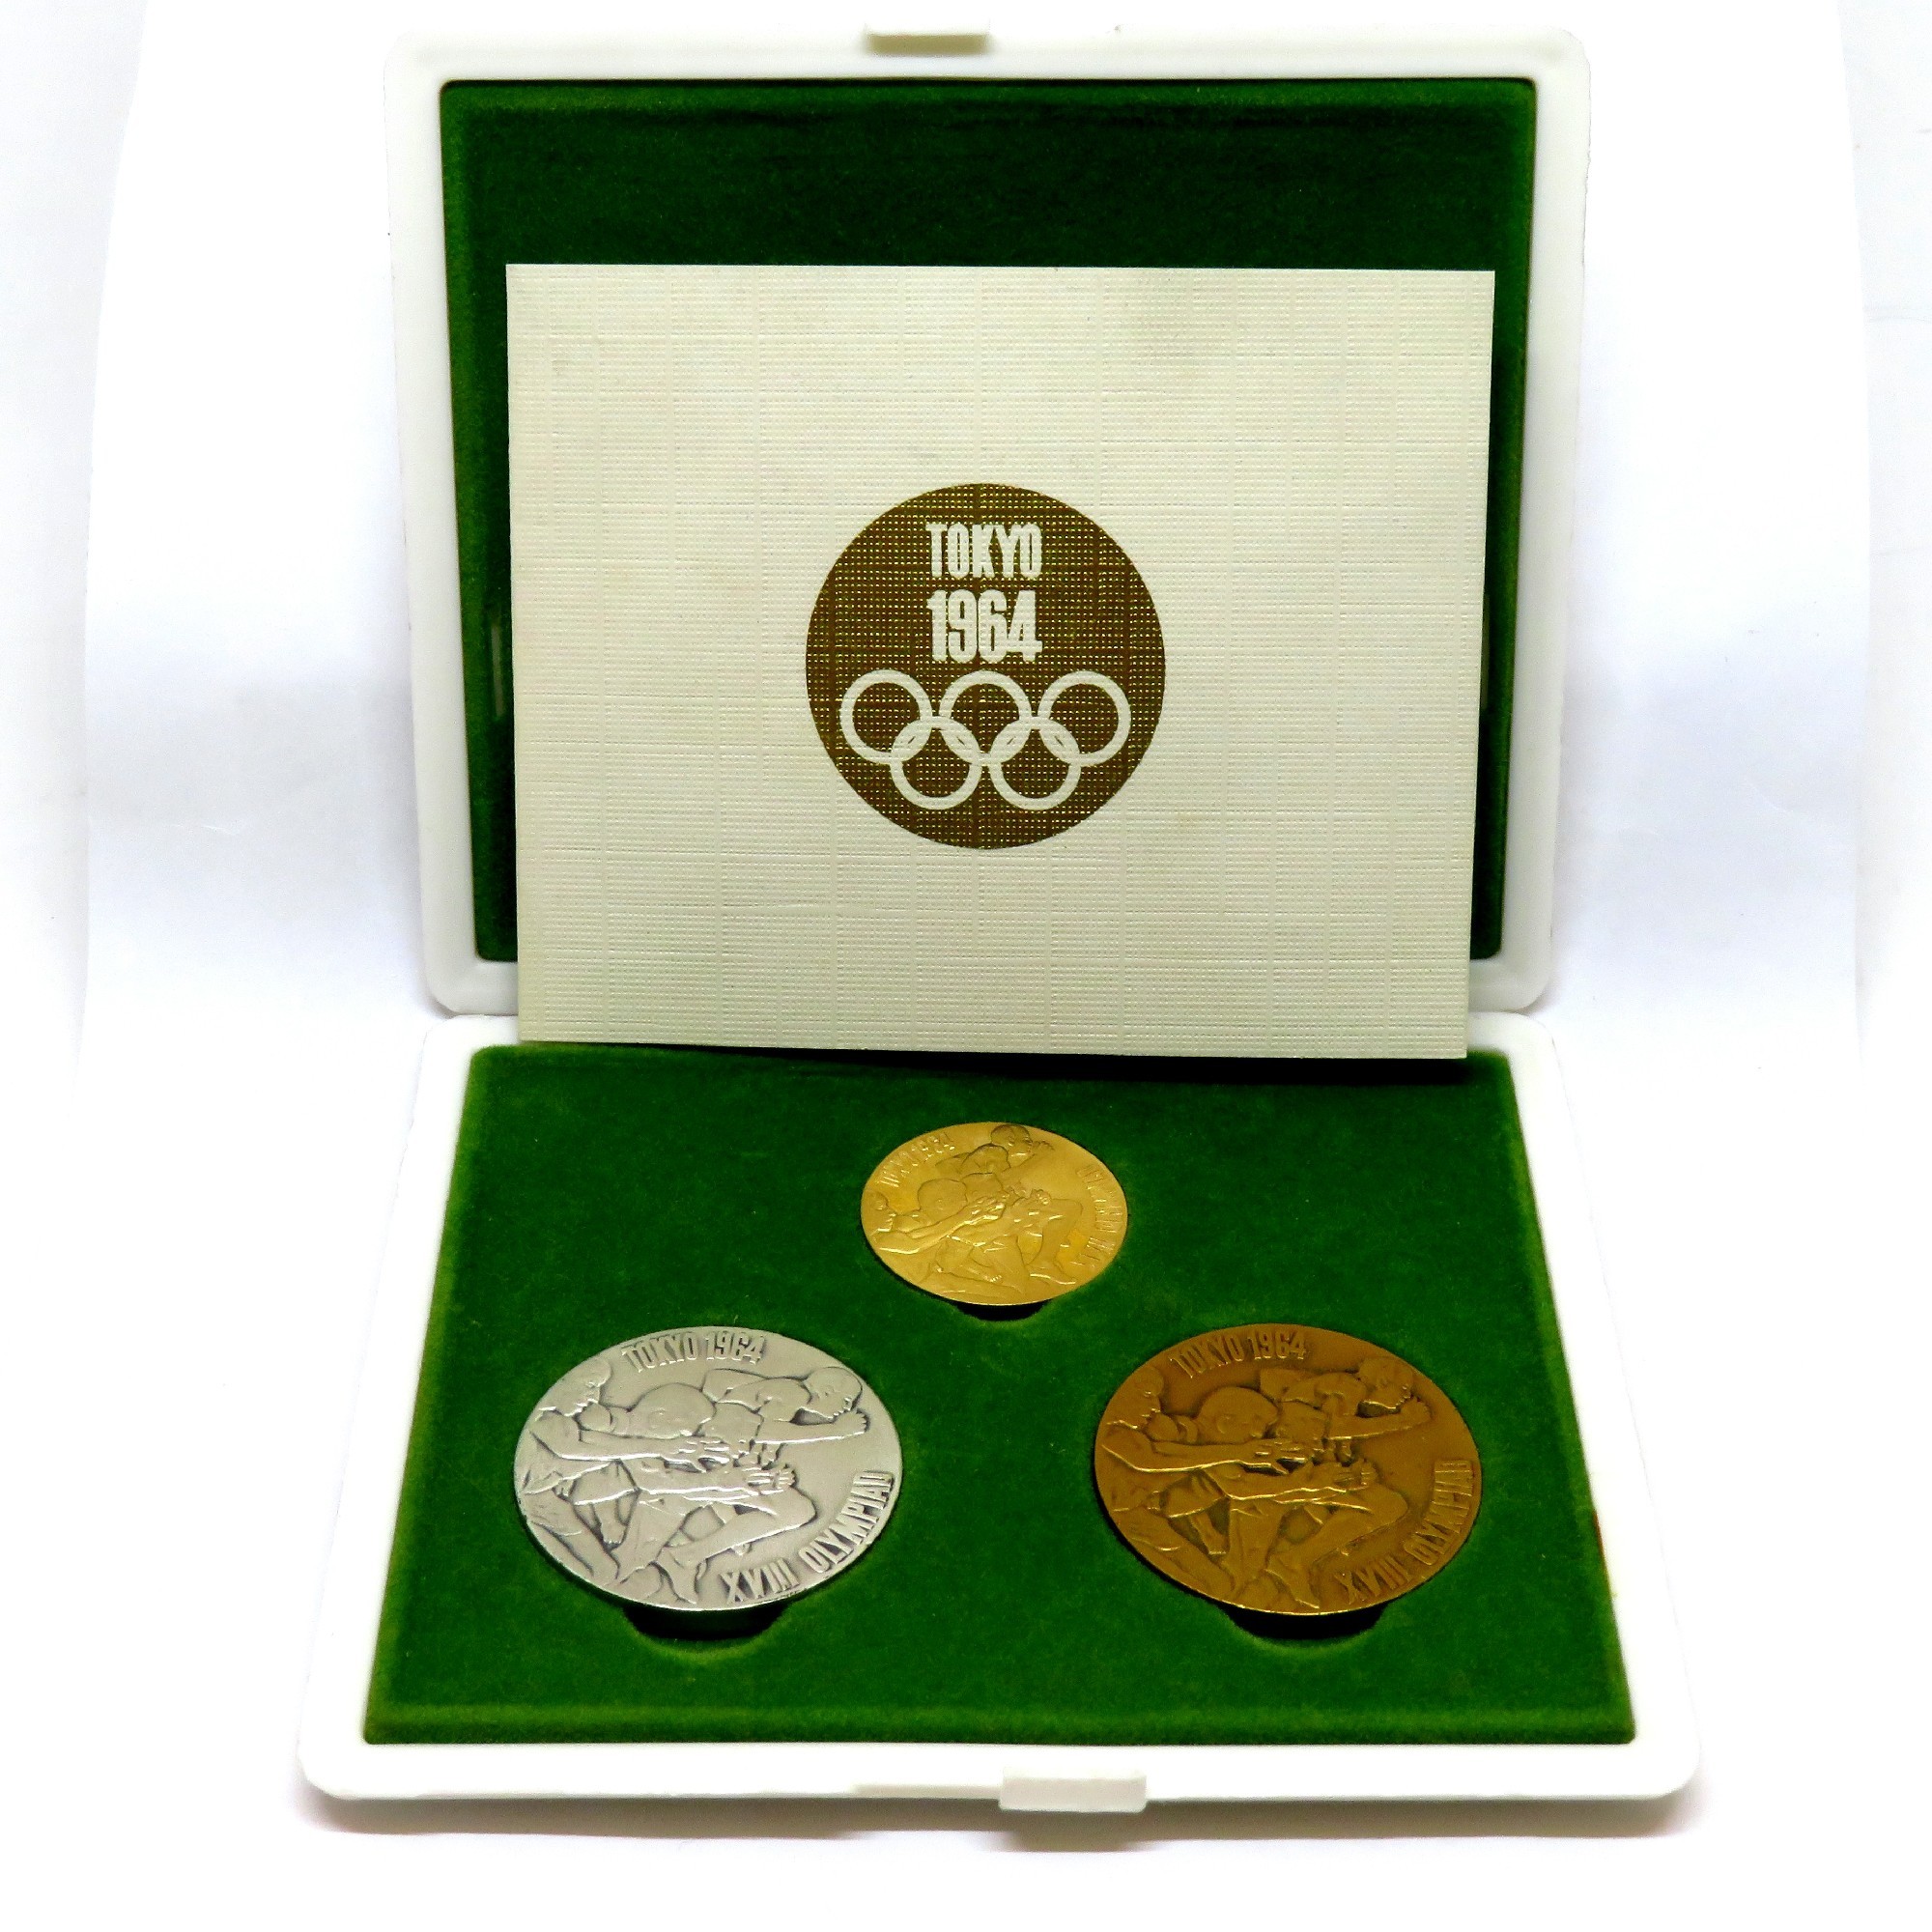 国内在庫有り 東京オリンピック記念メダル1964 アンティーク/コレクション